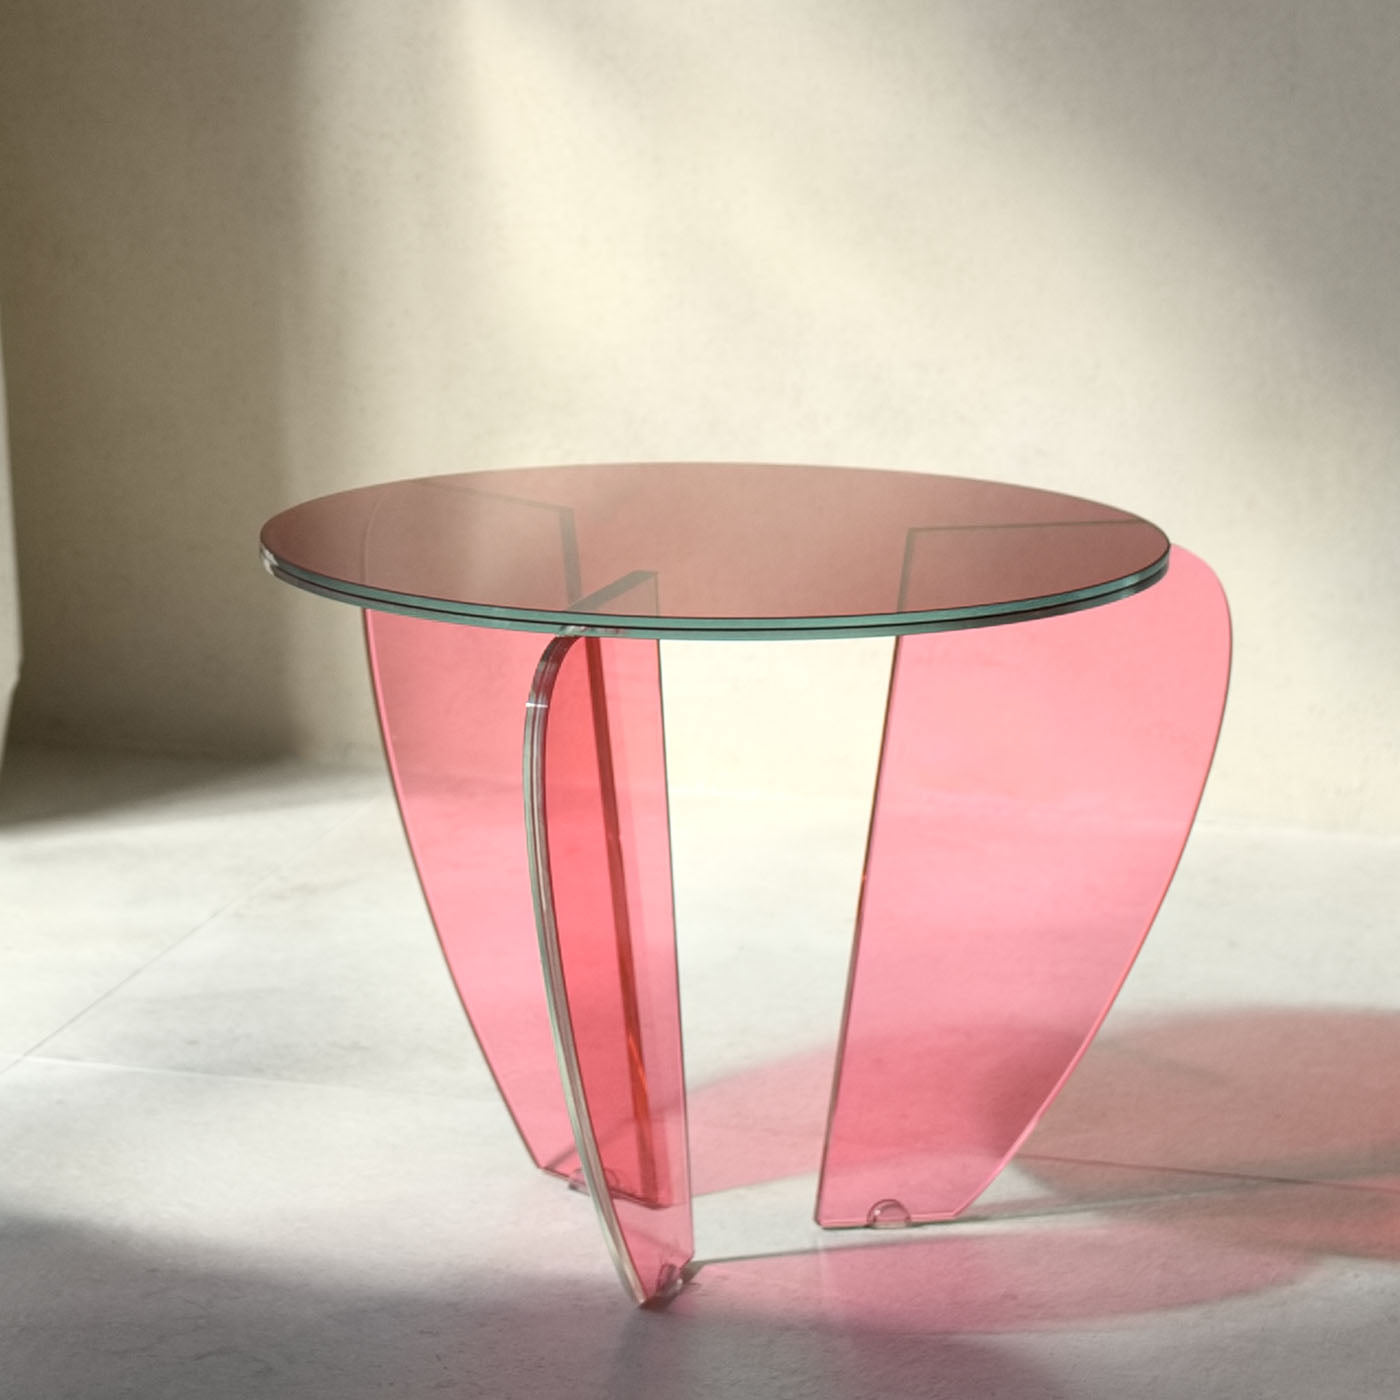 Teo Petite table d'appoint colorée par Andrea Petterini - Vue alternative 1